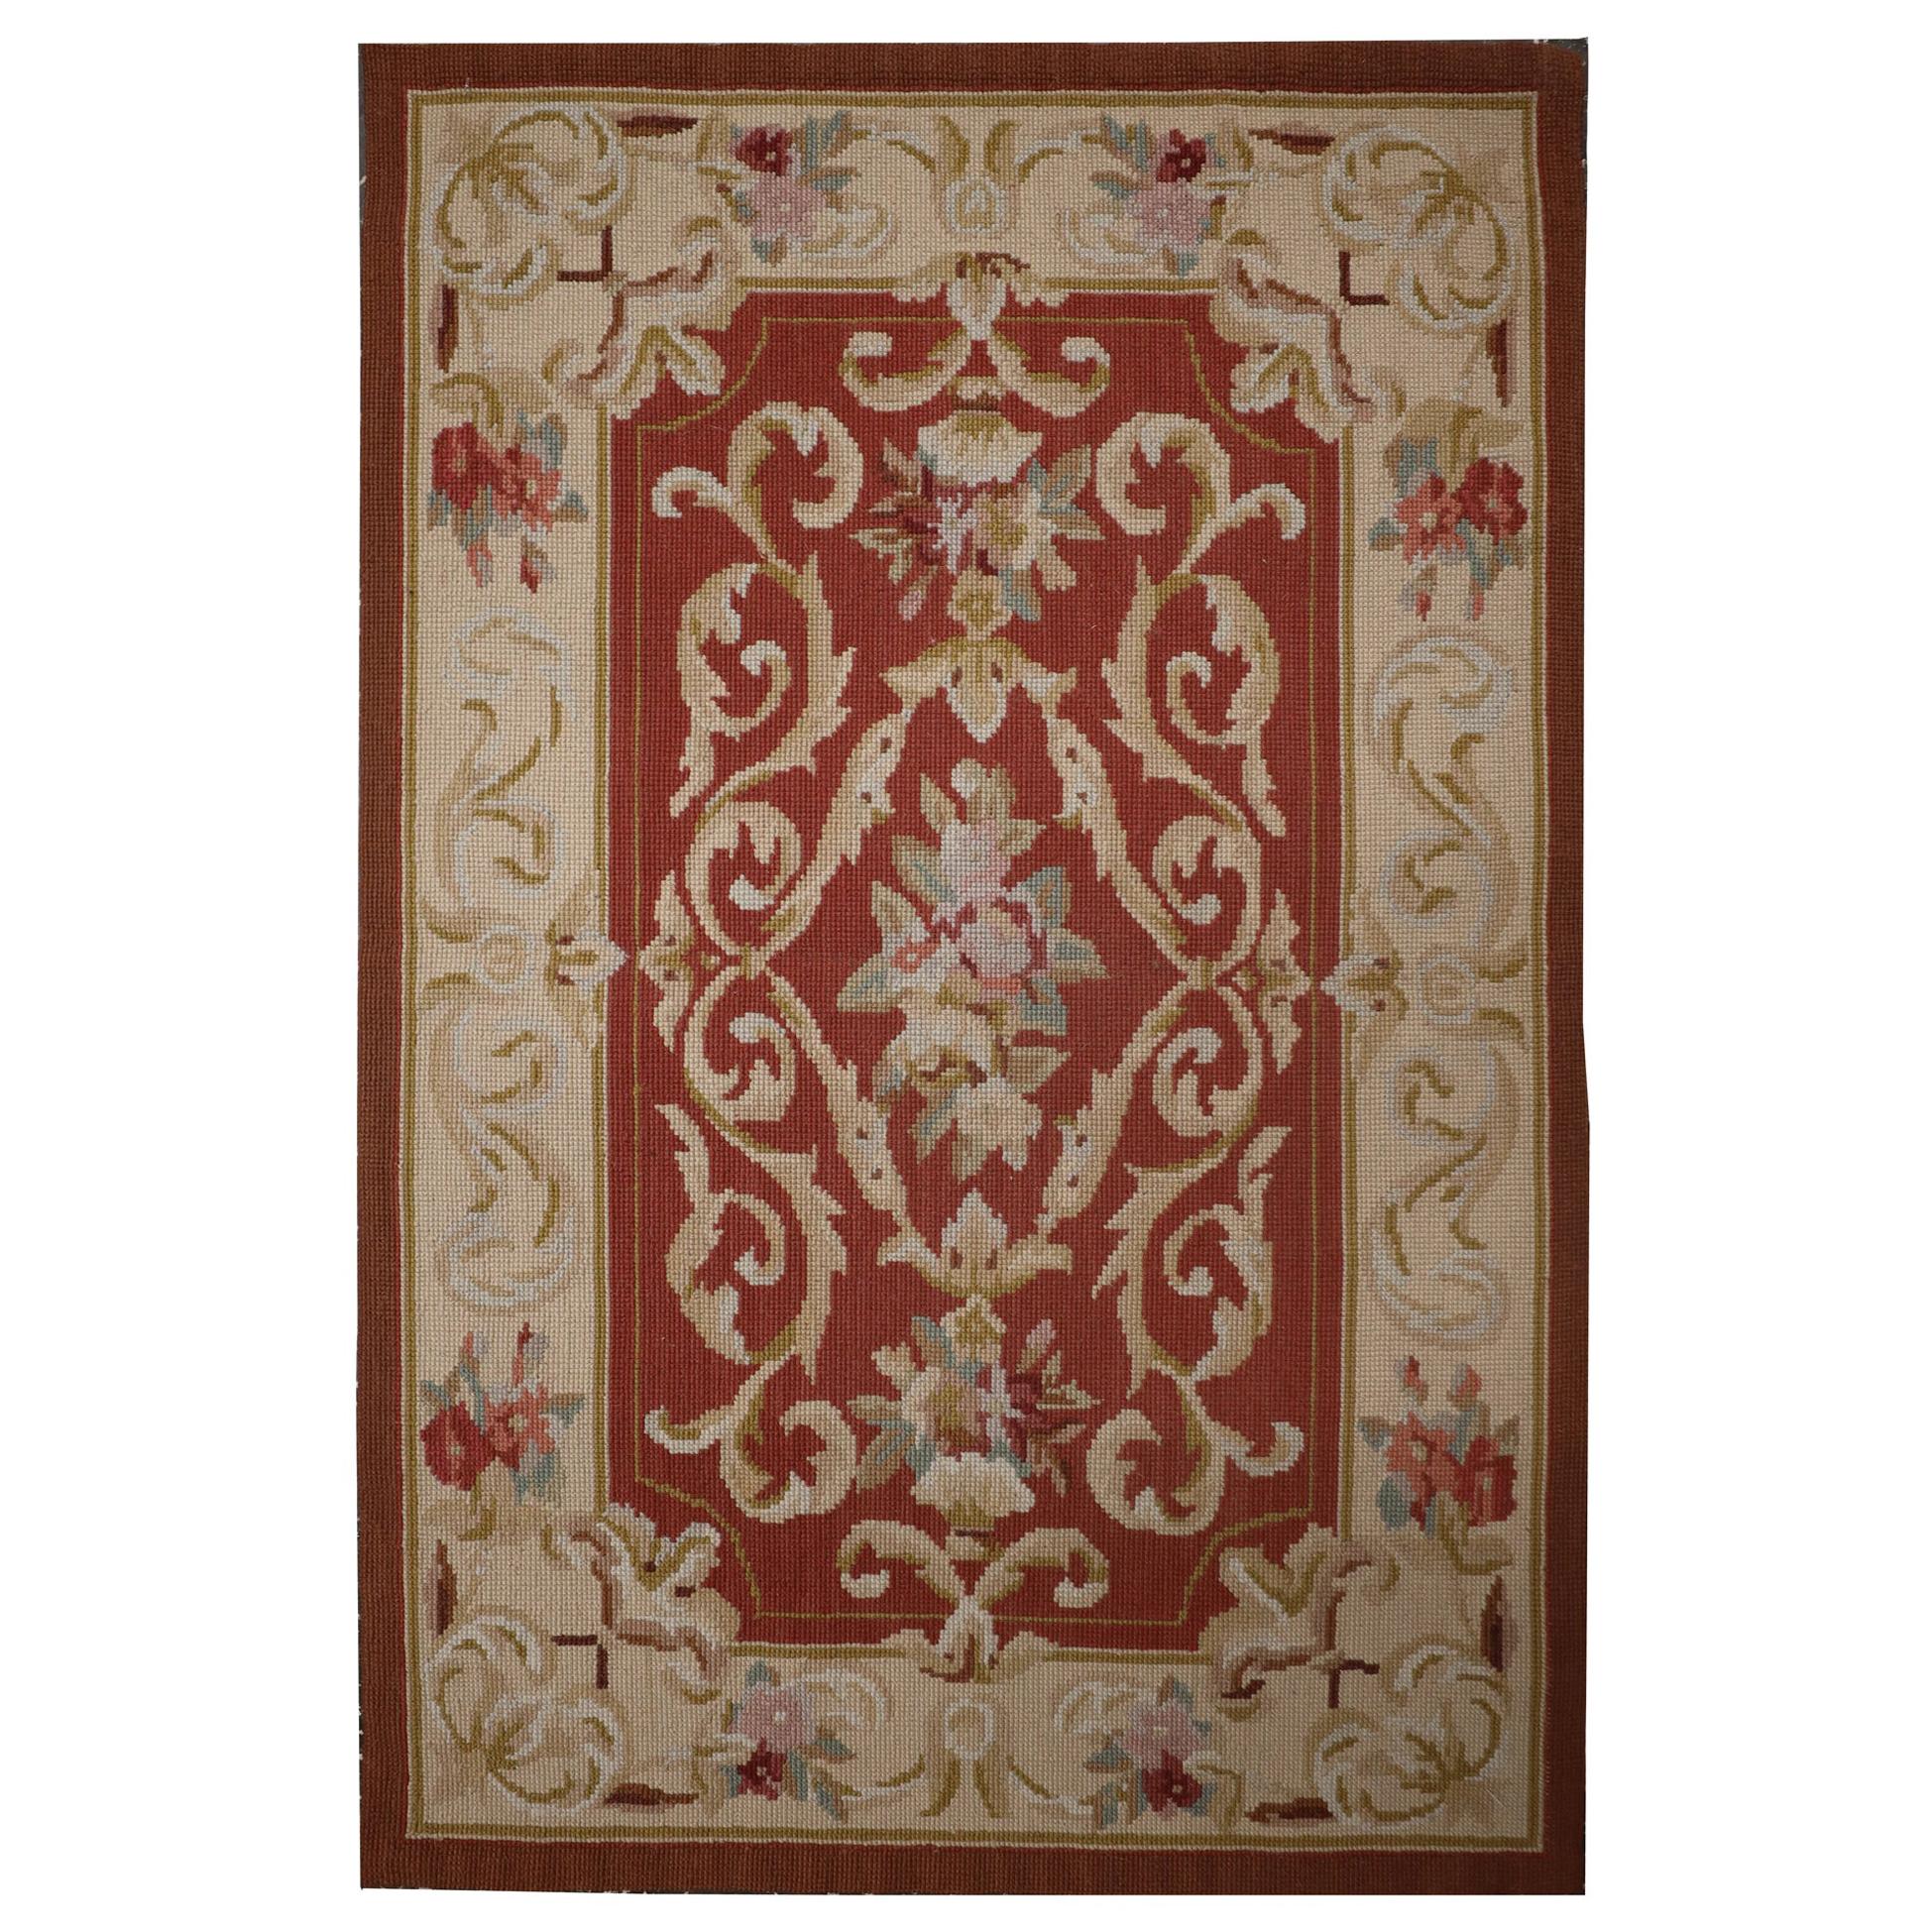 Handgewebter Teppich aus rostroter Wolle im französischen Stil mit Gobelinstickerei